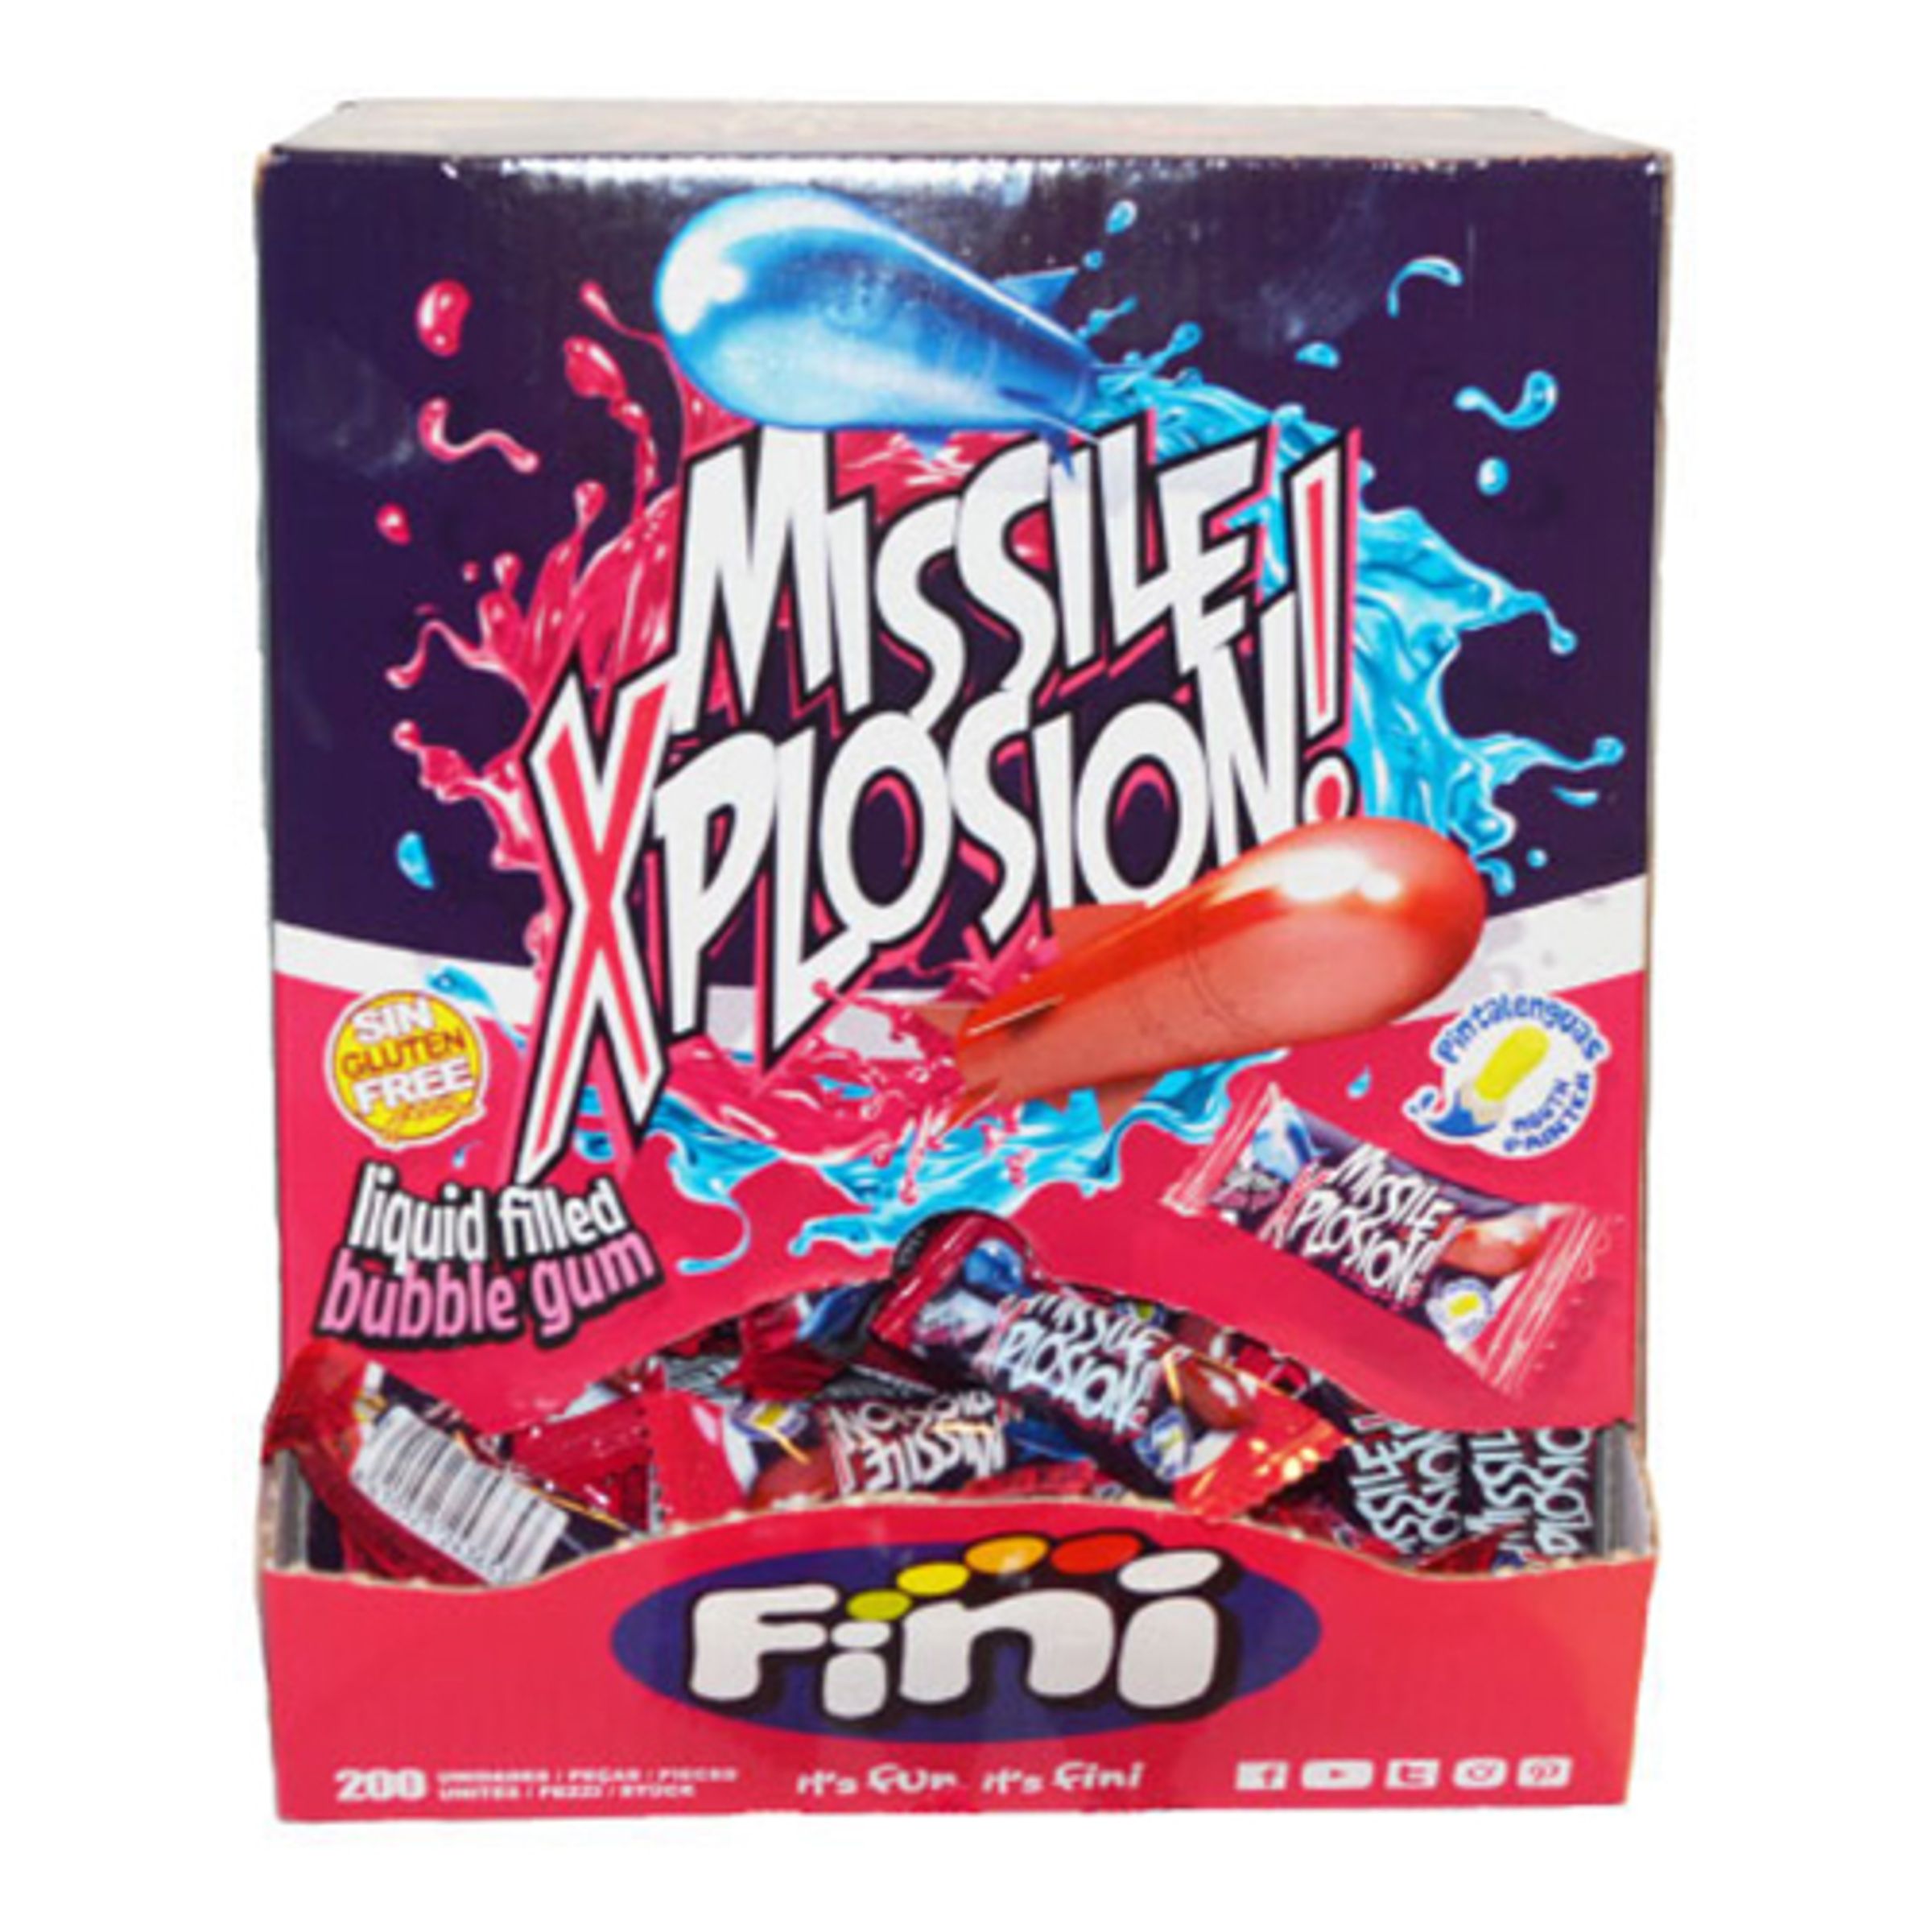 Tuggummi Missil Explosion Storpack - 200-pack (hel kartong)